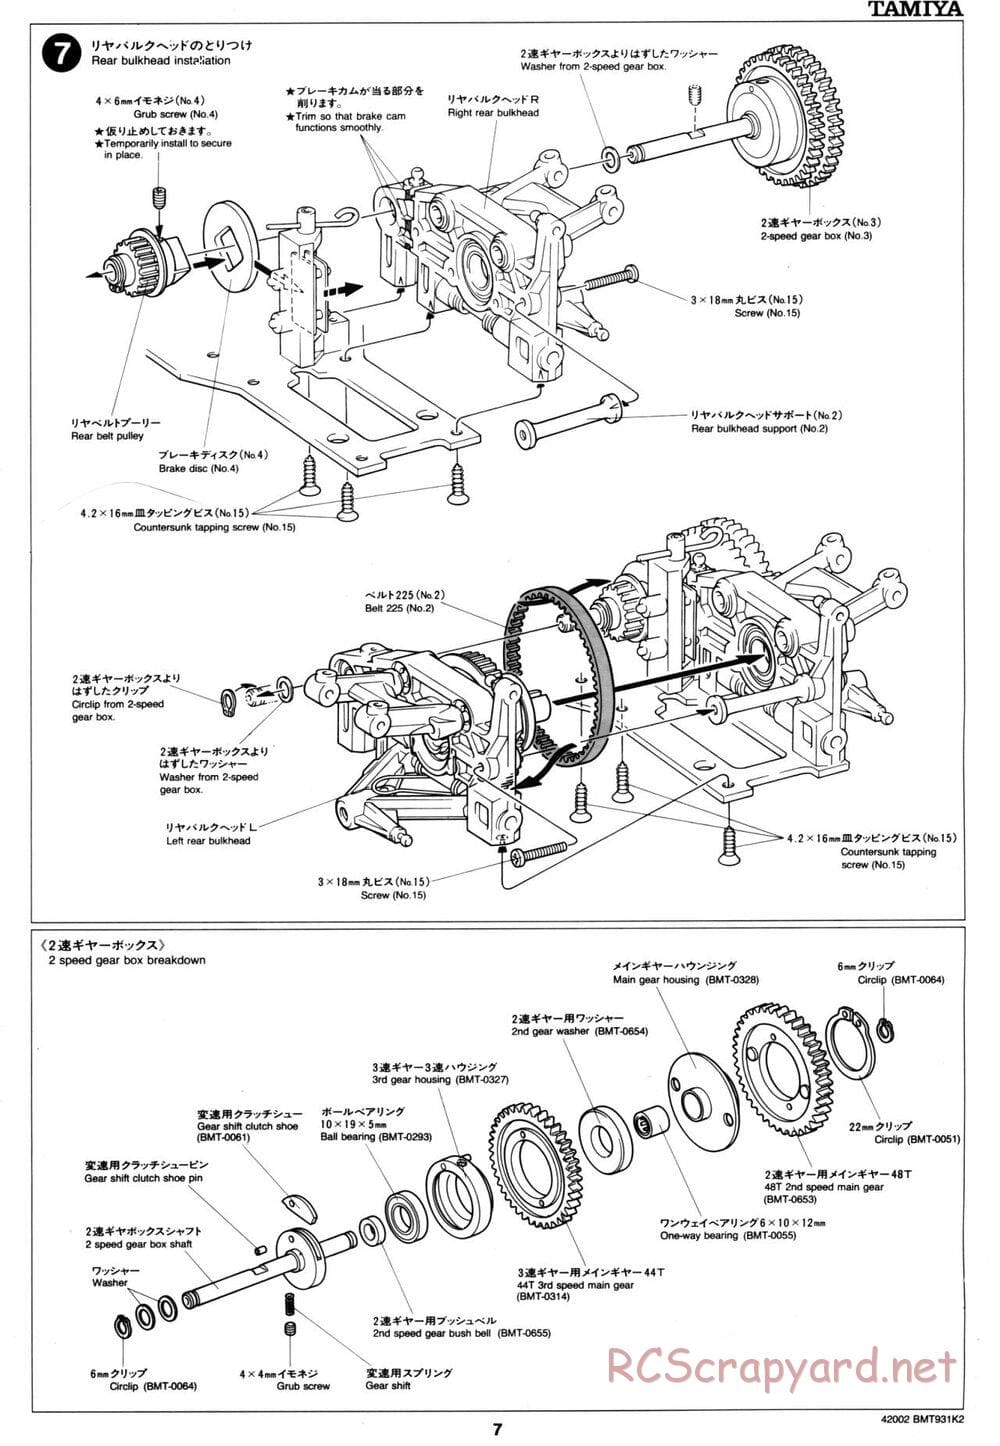 Tamiya - BMT 931 K2 Racing Chassis - Manual - Page 7